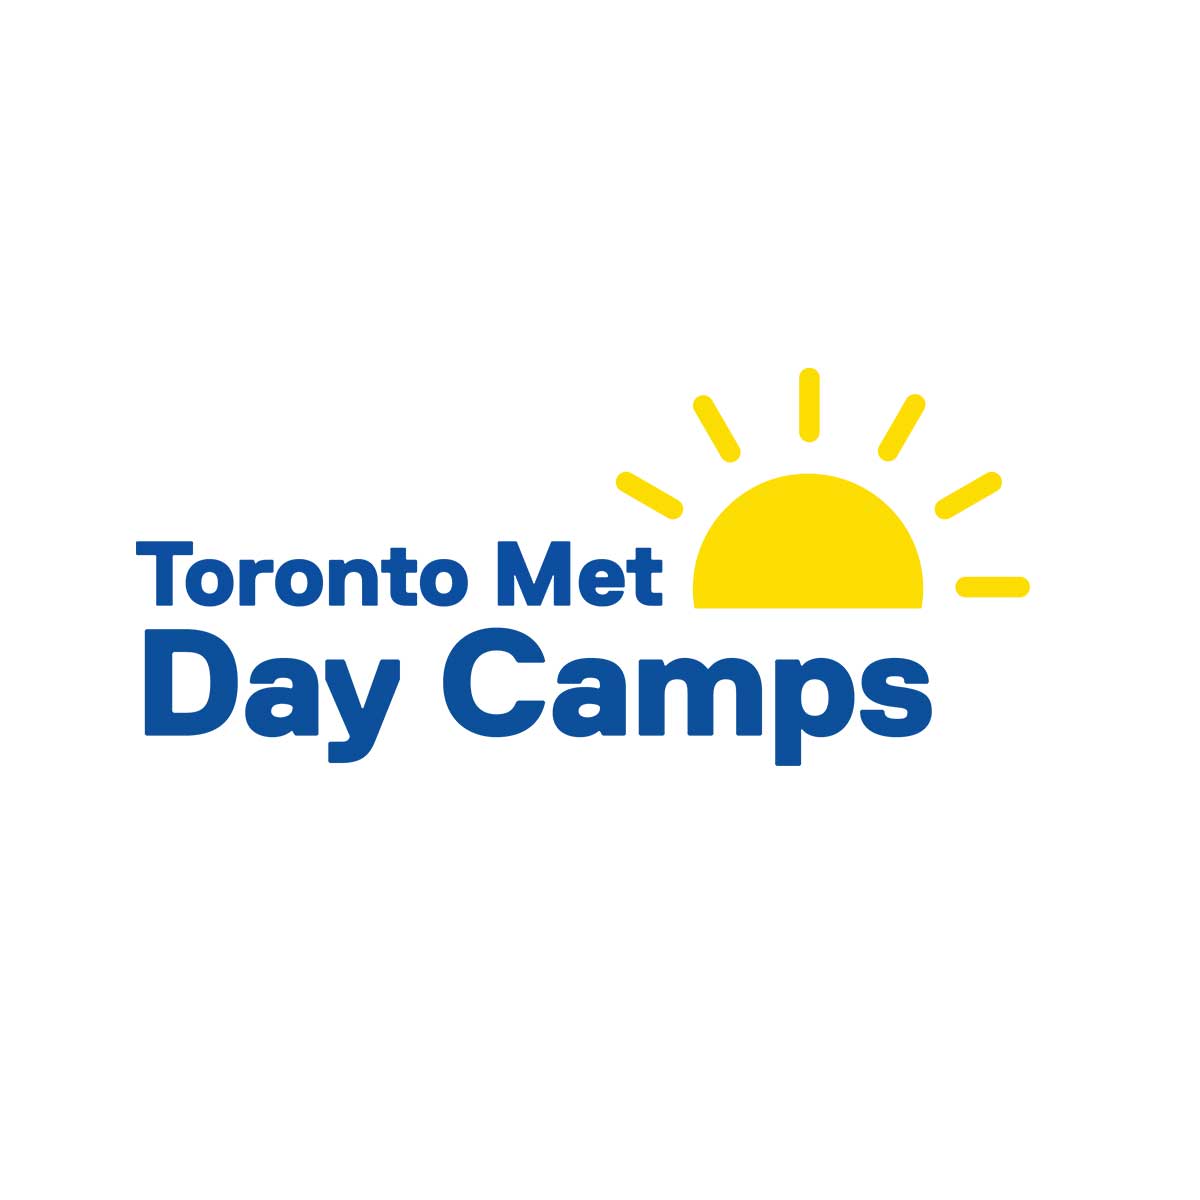 Toronto Met Day Camps